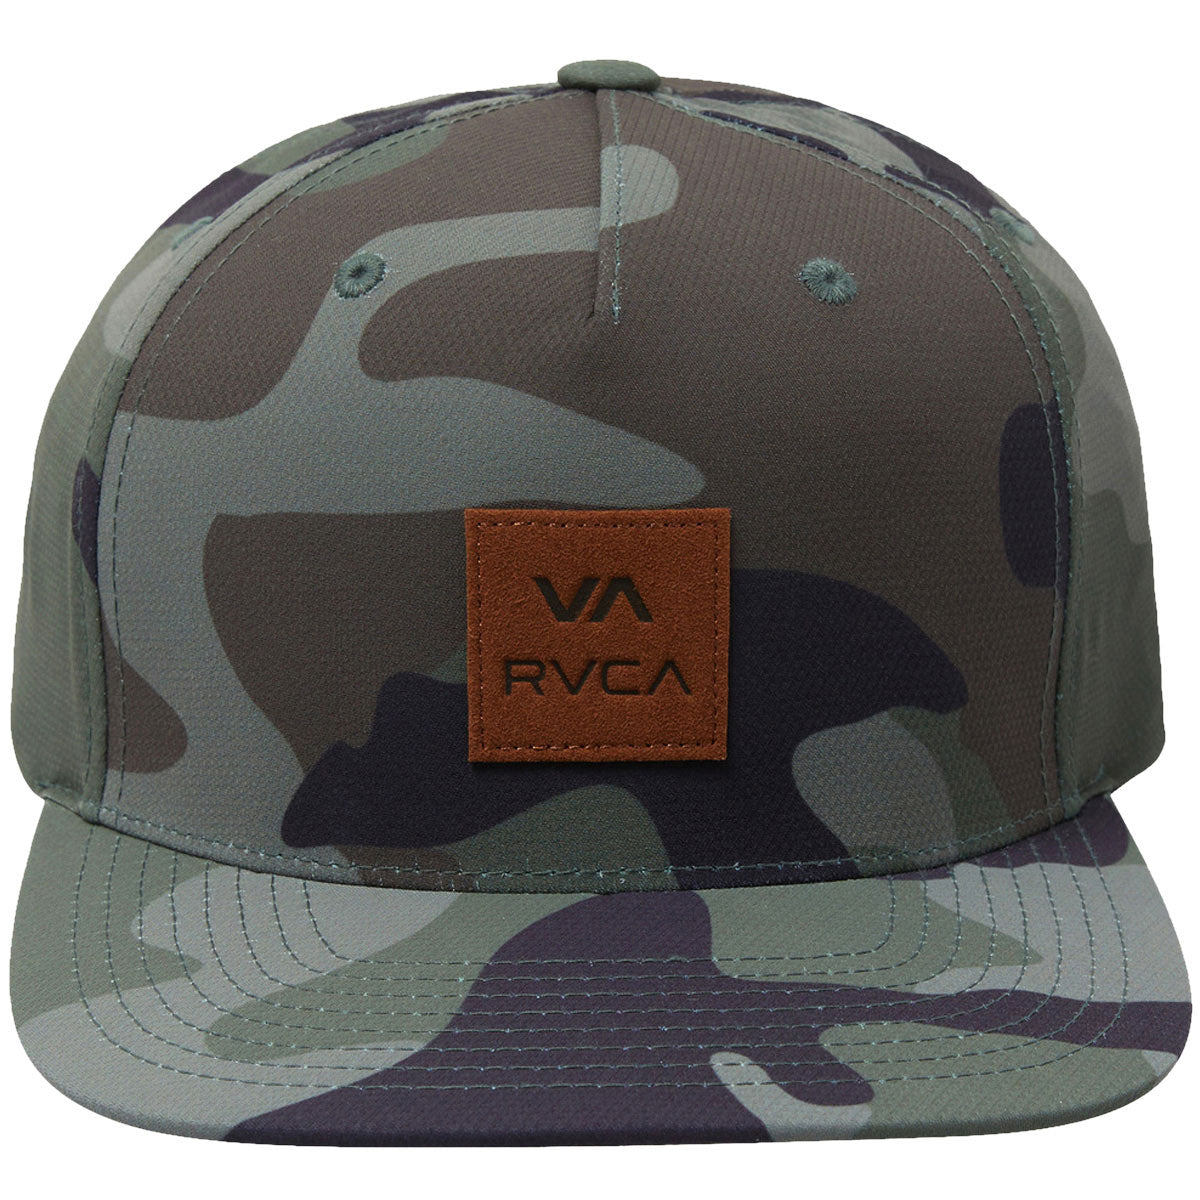 RVCA Juniper Snapback Hat - Camo image 3